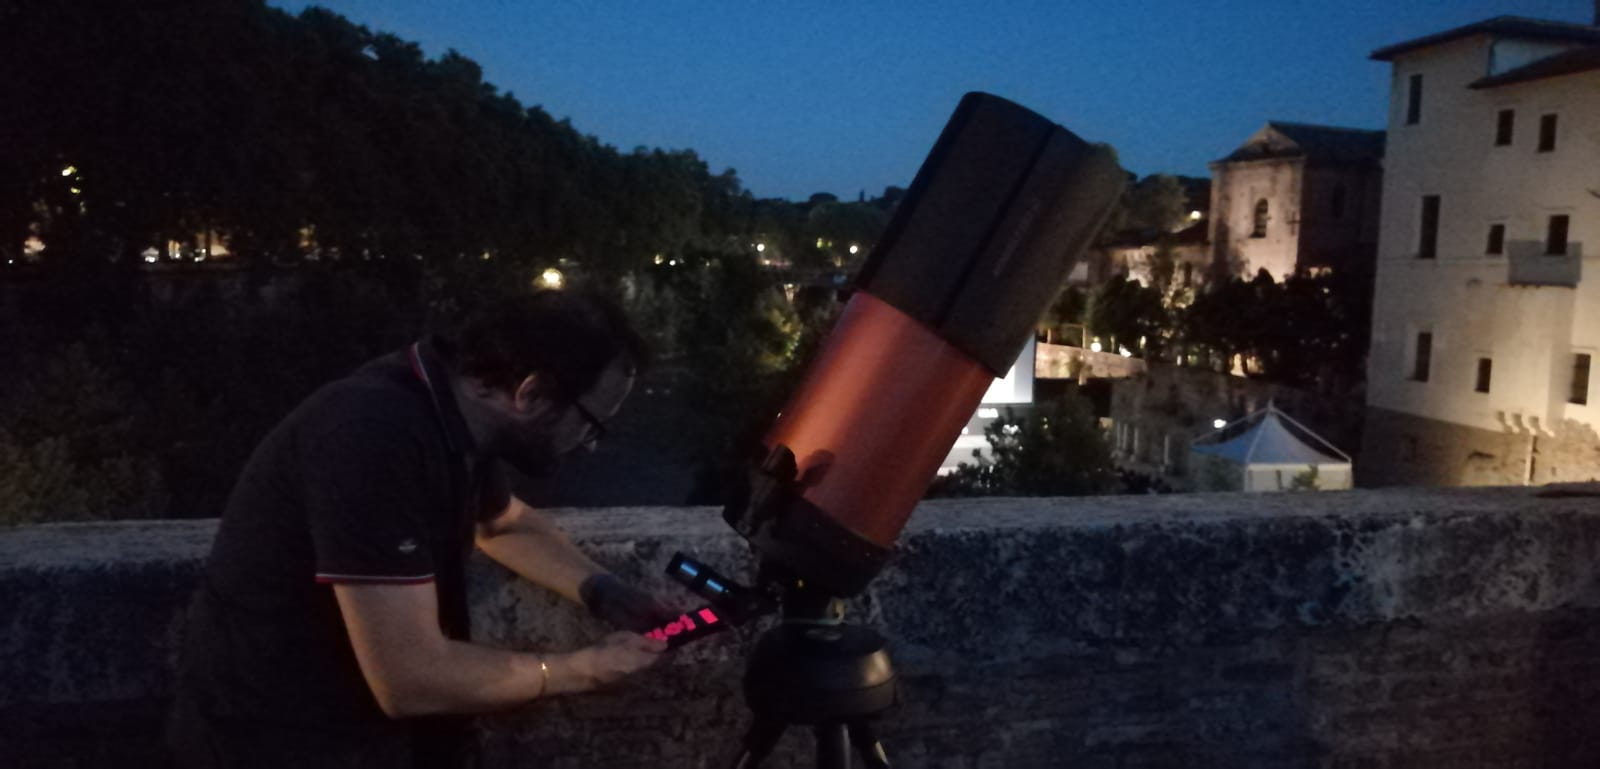 Preparing the telescope